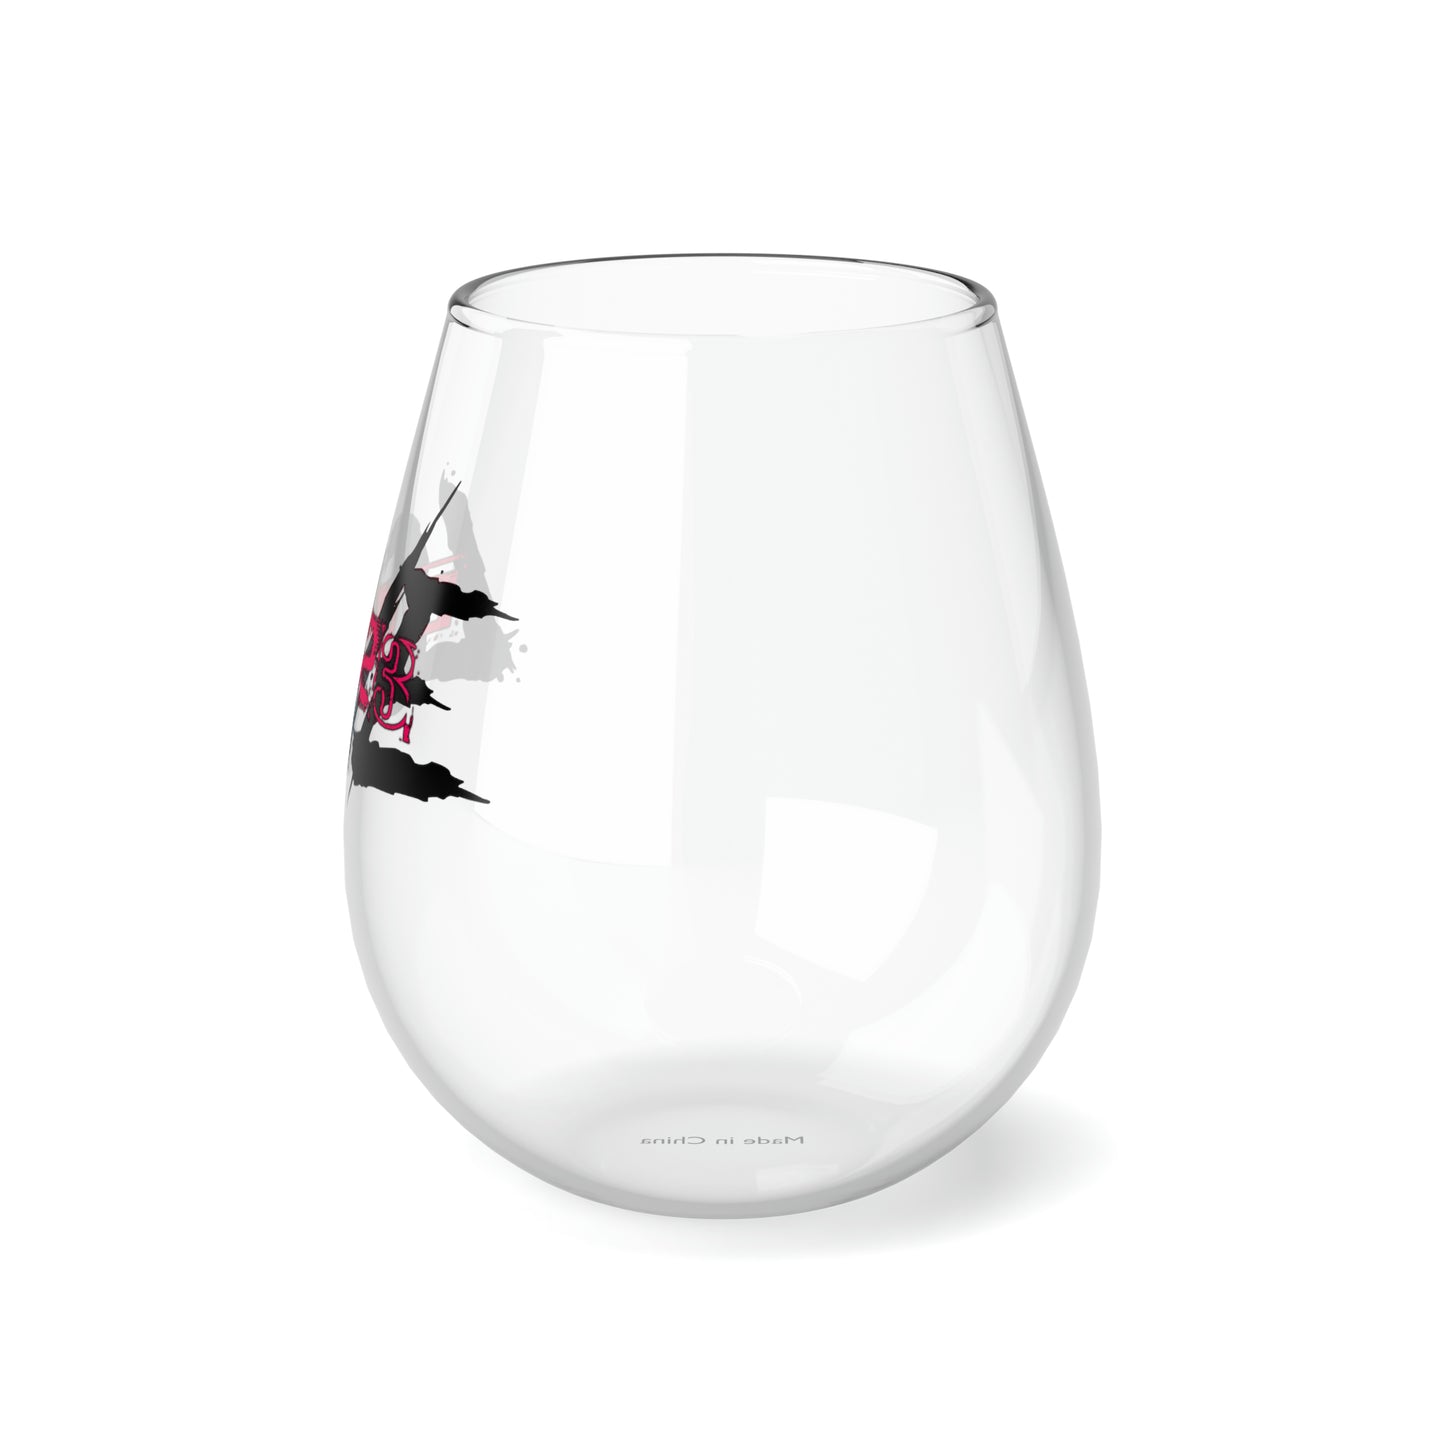 EL423 Gypsy Love Stemless Wine Glass, 11.75oz